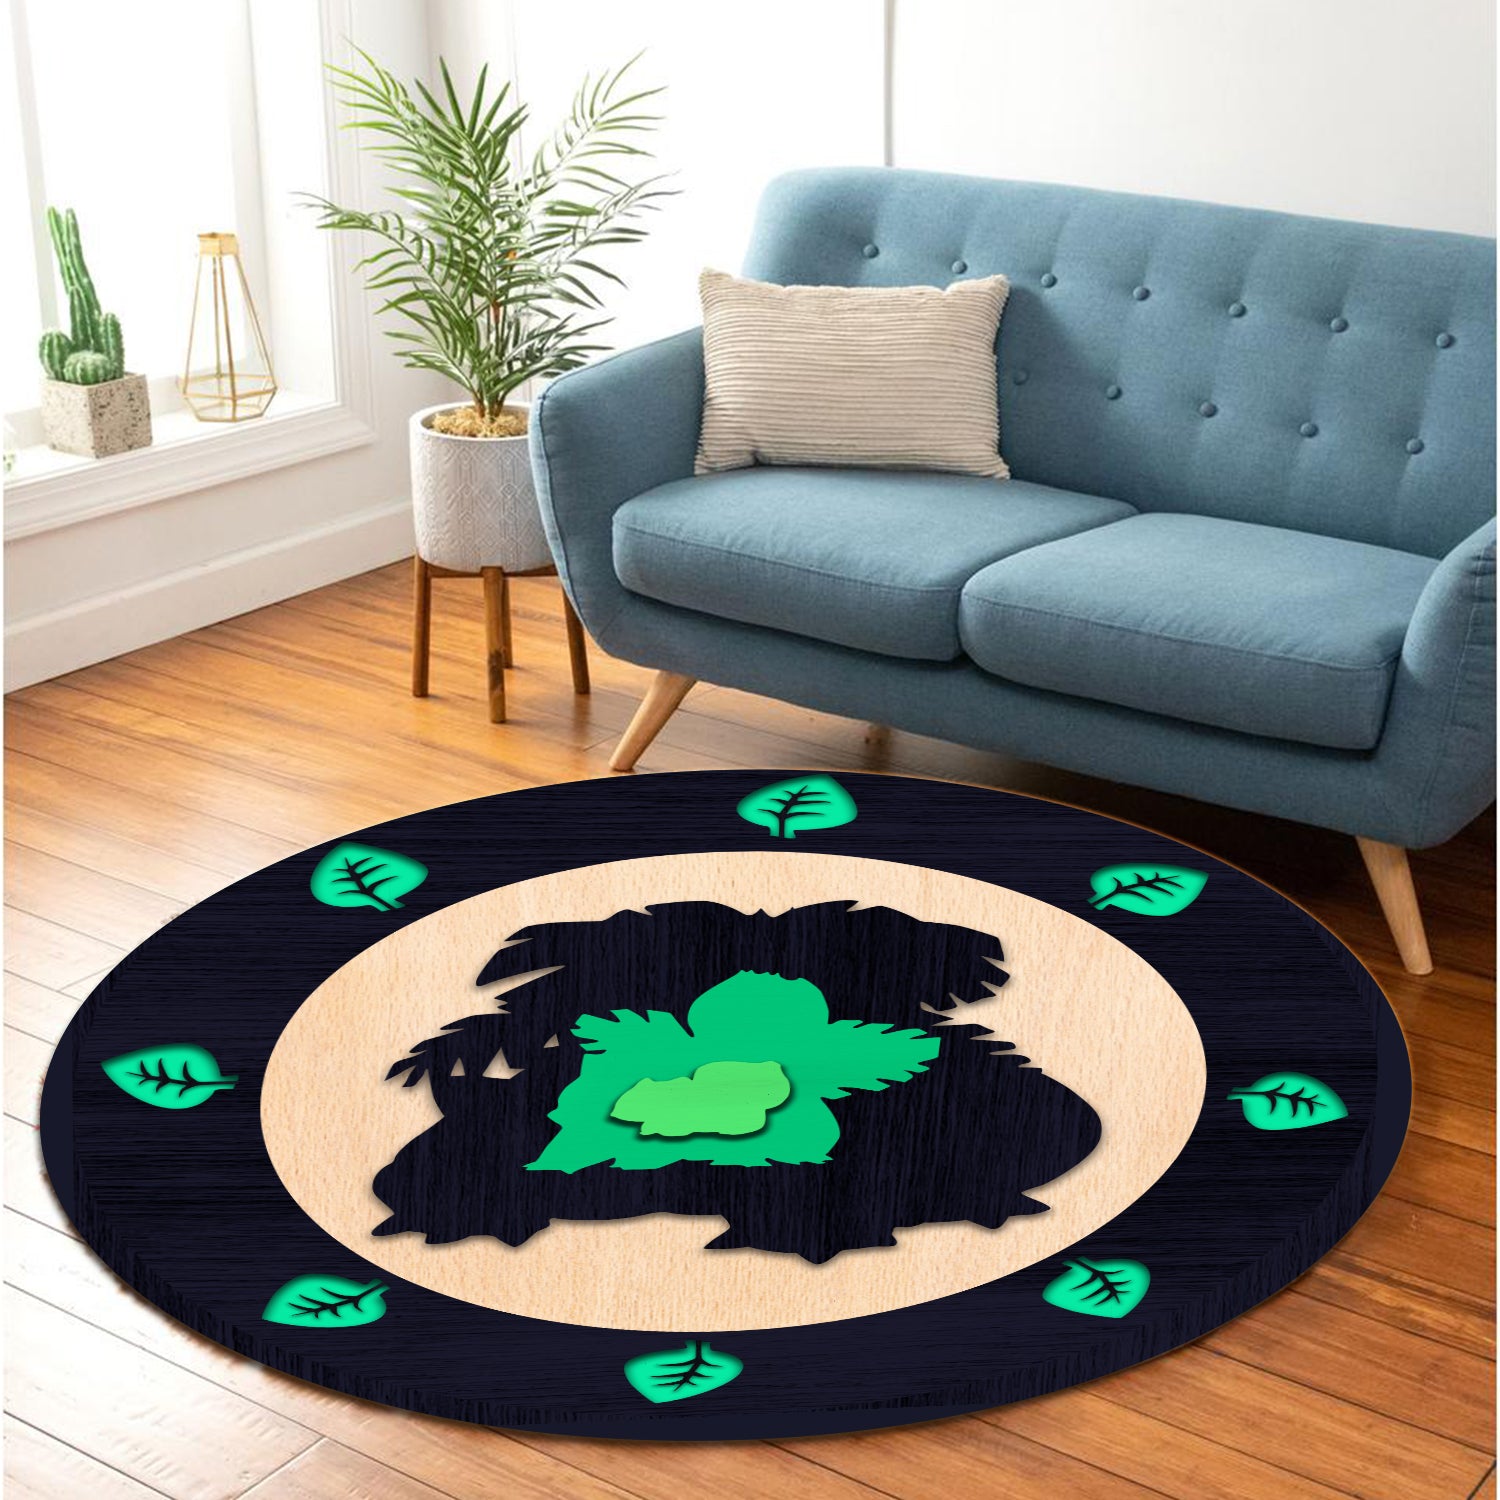 Bulbasaur Evolution Pokemon Round Carpet Rug Bedroom Livingroom Home Decor Nearkii